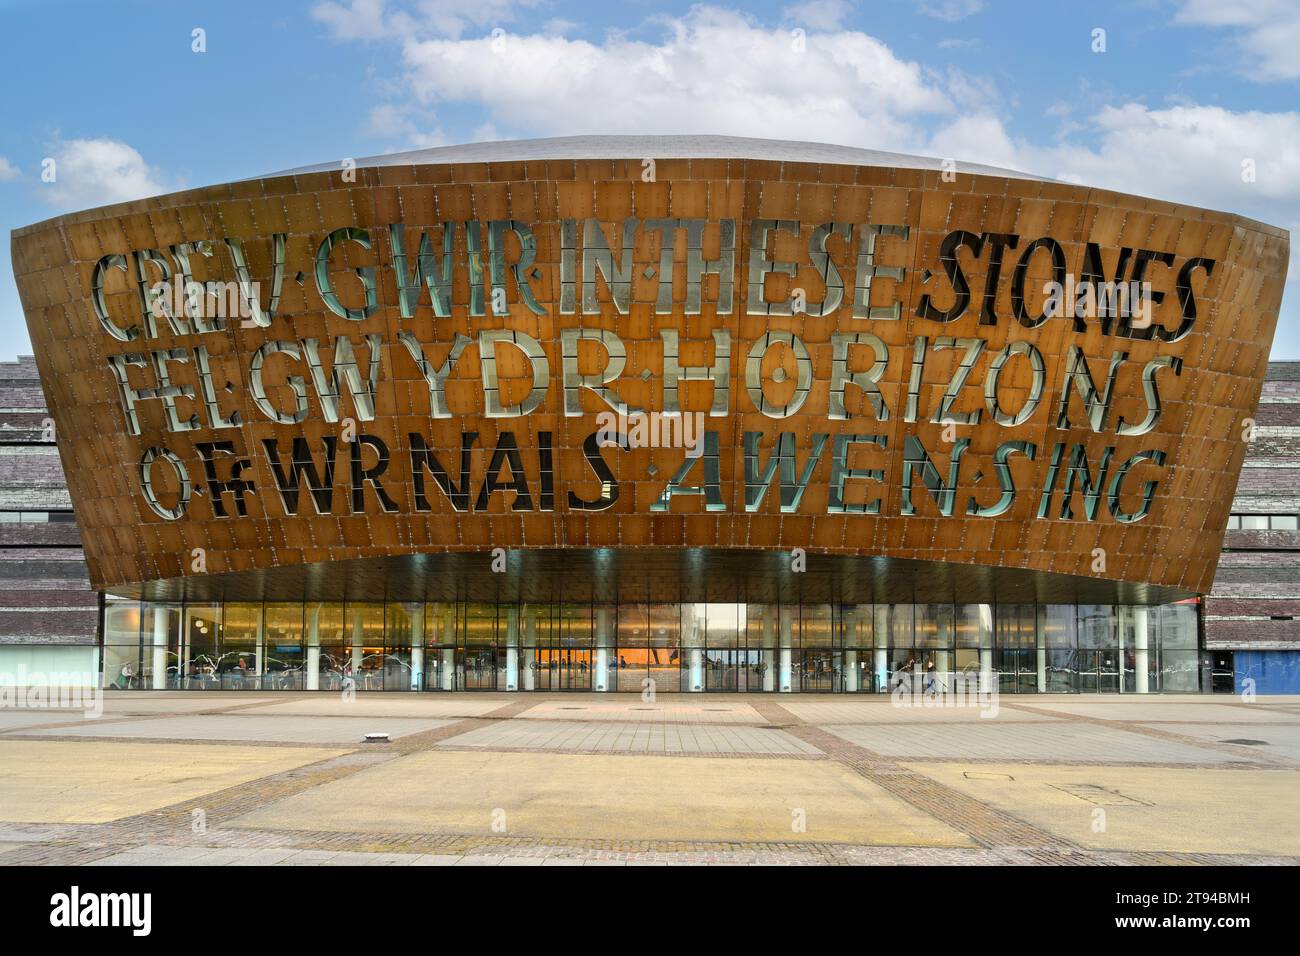 Le Wales Millennium Centre, la baie de Cardiff, Cardiff, Pays de Galles, Royaume-Uni Banque D'Images